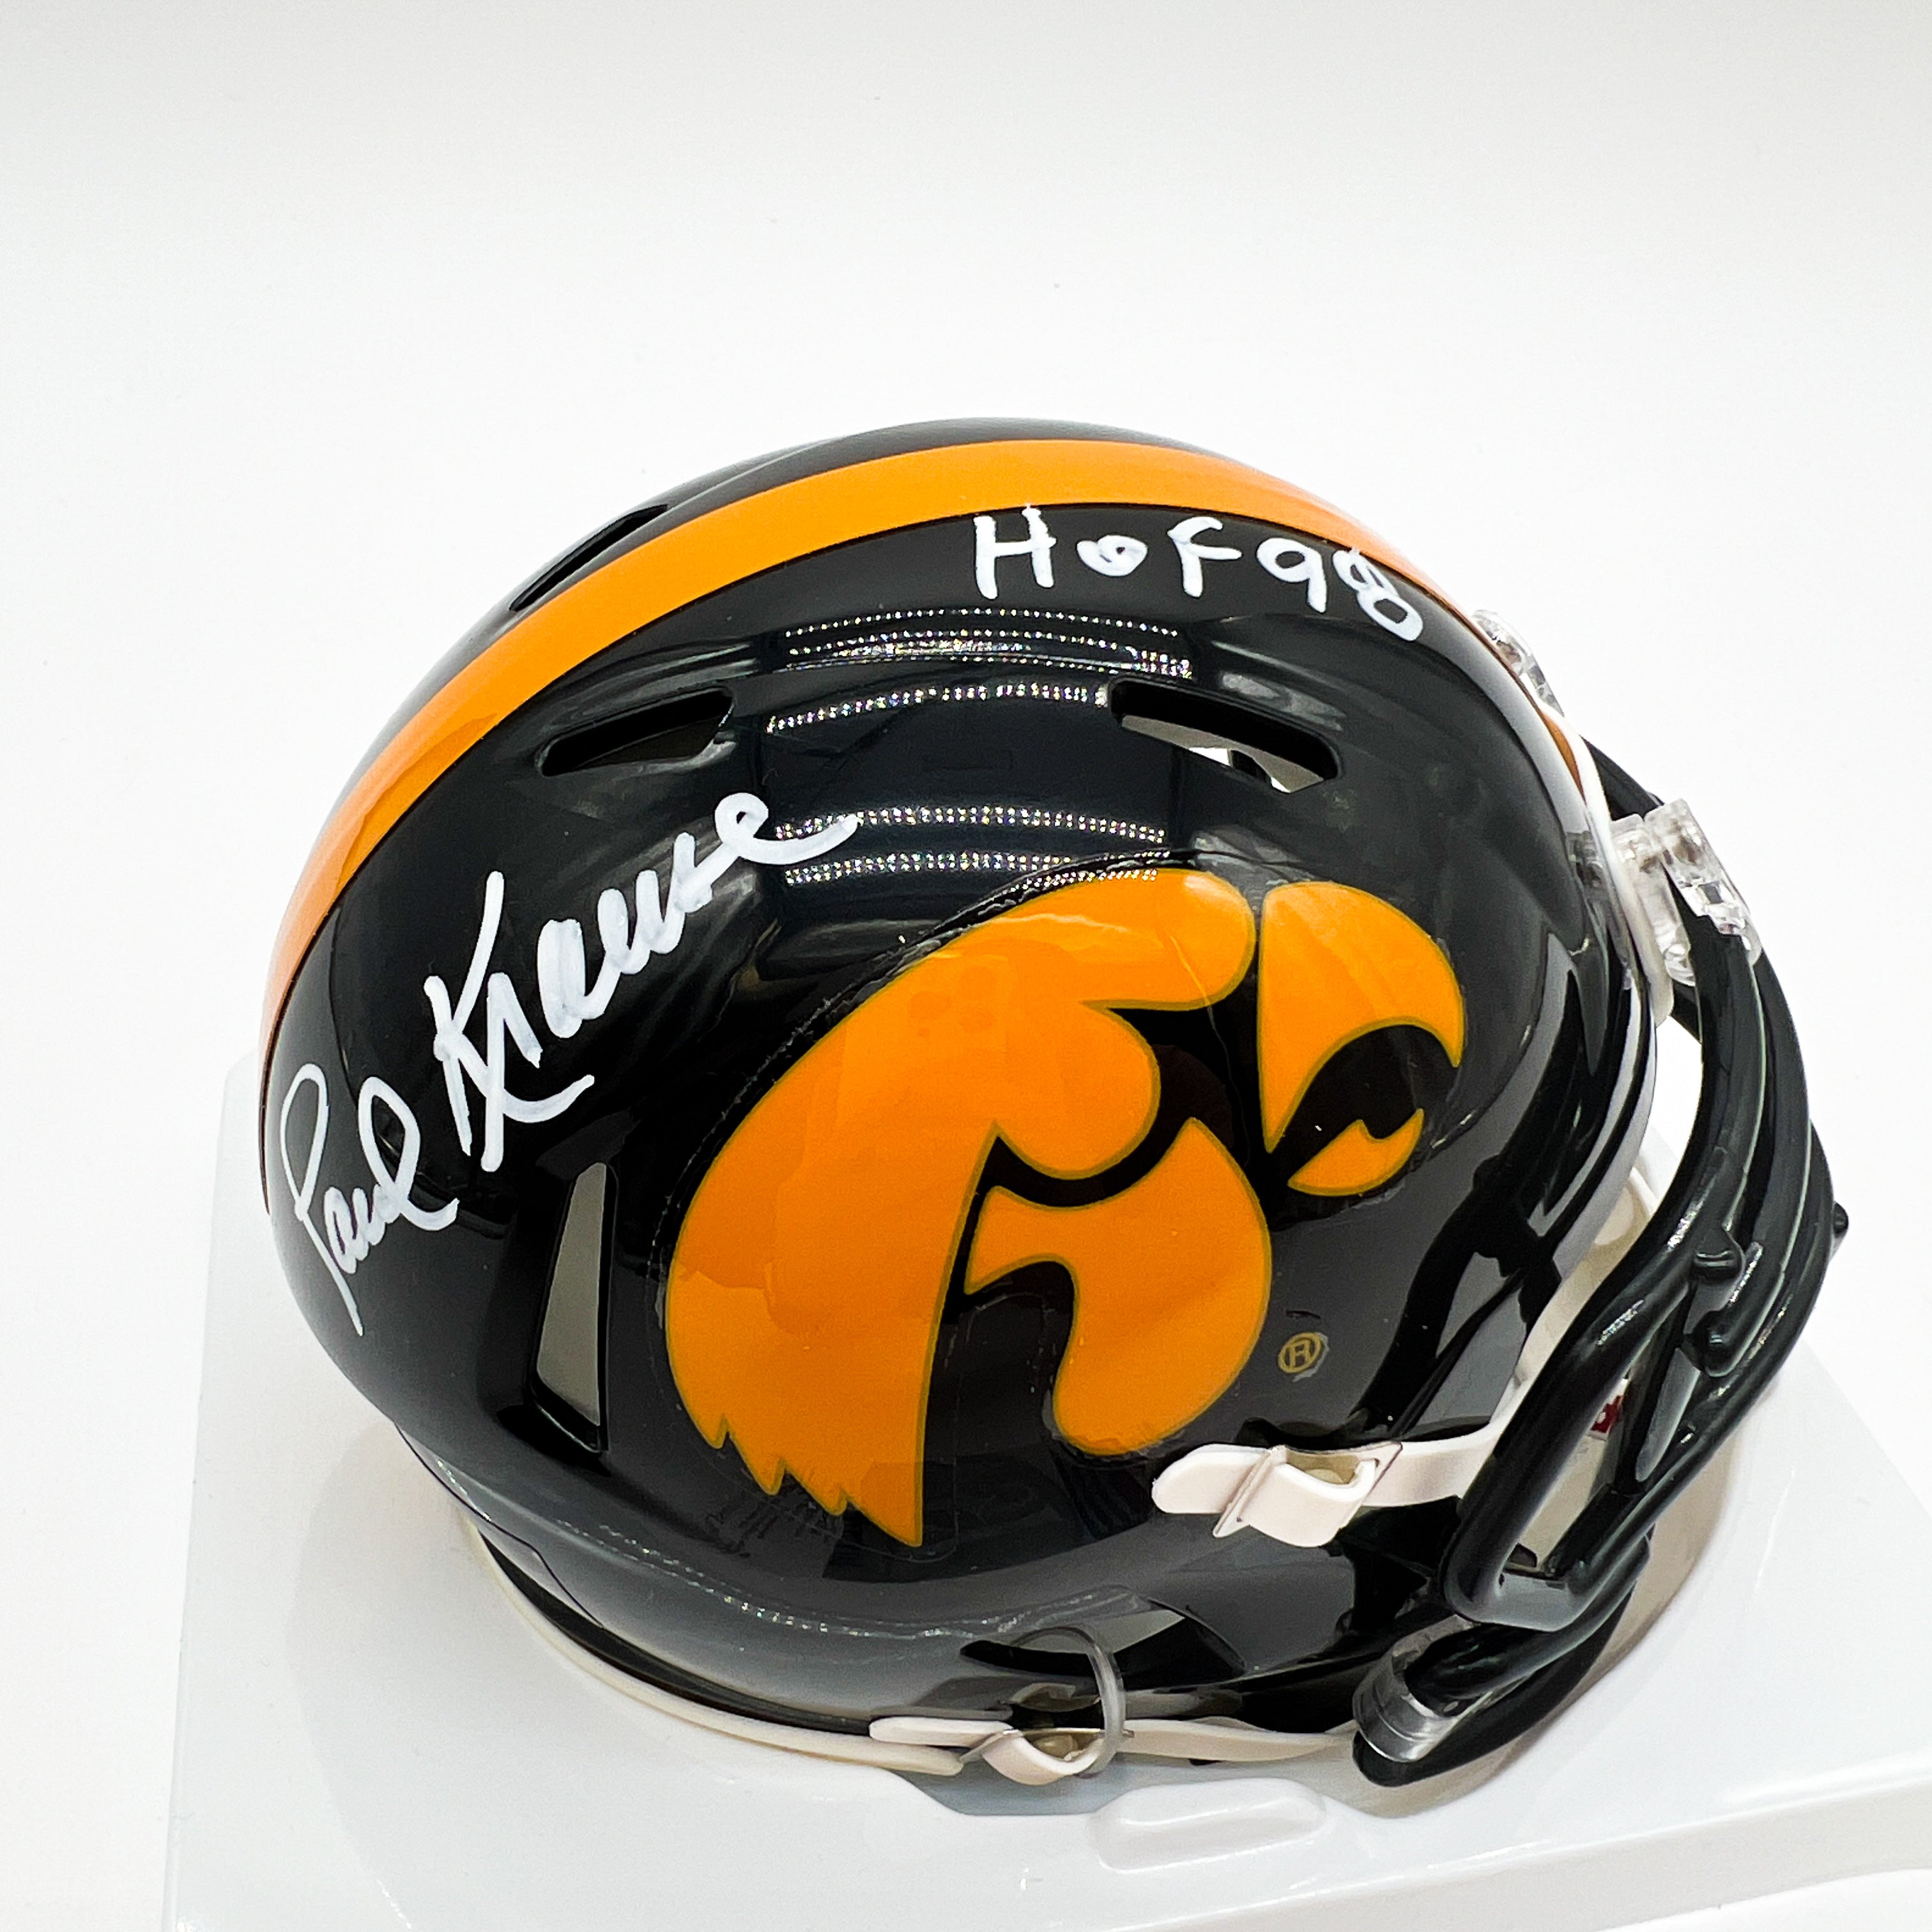 Paul Krause Iowa Hawkeyes Signed Mini Helmet Close Up